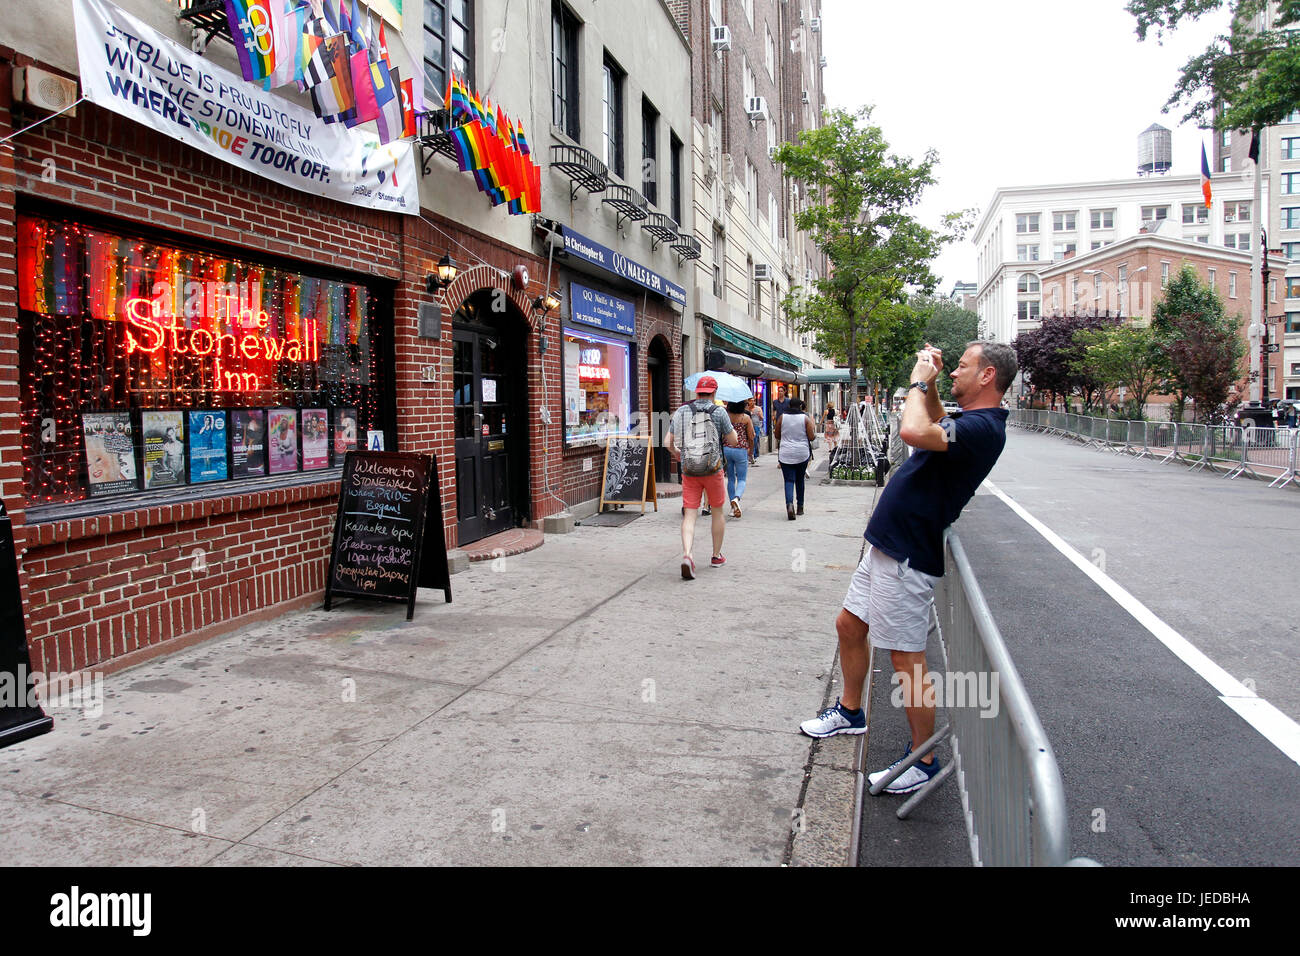 Nueva York, Estados Unidos. El 23 de junio, 2017. Un hombre se toma una fotografía del Stonewall Inn en New York's Greenwich Village donde el movimiento del orgullo Gay nació, tras una serie de manifestaciones en respuesta a una redada policial de la barra en 1969. Las personas se están volcando hacia el sitio, que ahora es un monumento nacional, como eventos marcha del Orgullo Gay en la Ciudad de Nueva York este fin de semana, incluido el domingo la marcha del orgullo. Crédito: Adam Stoltman/Alamy Live News Foto de stock